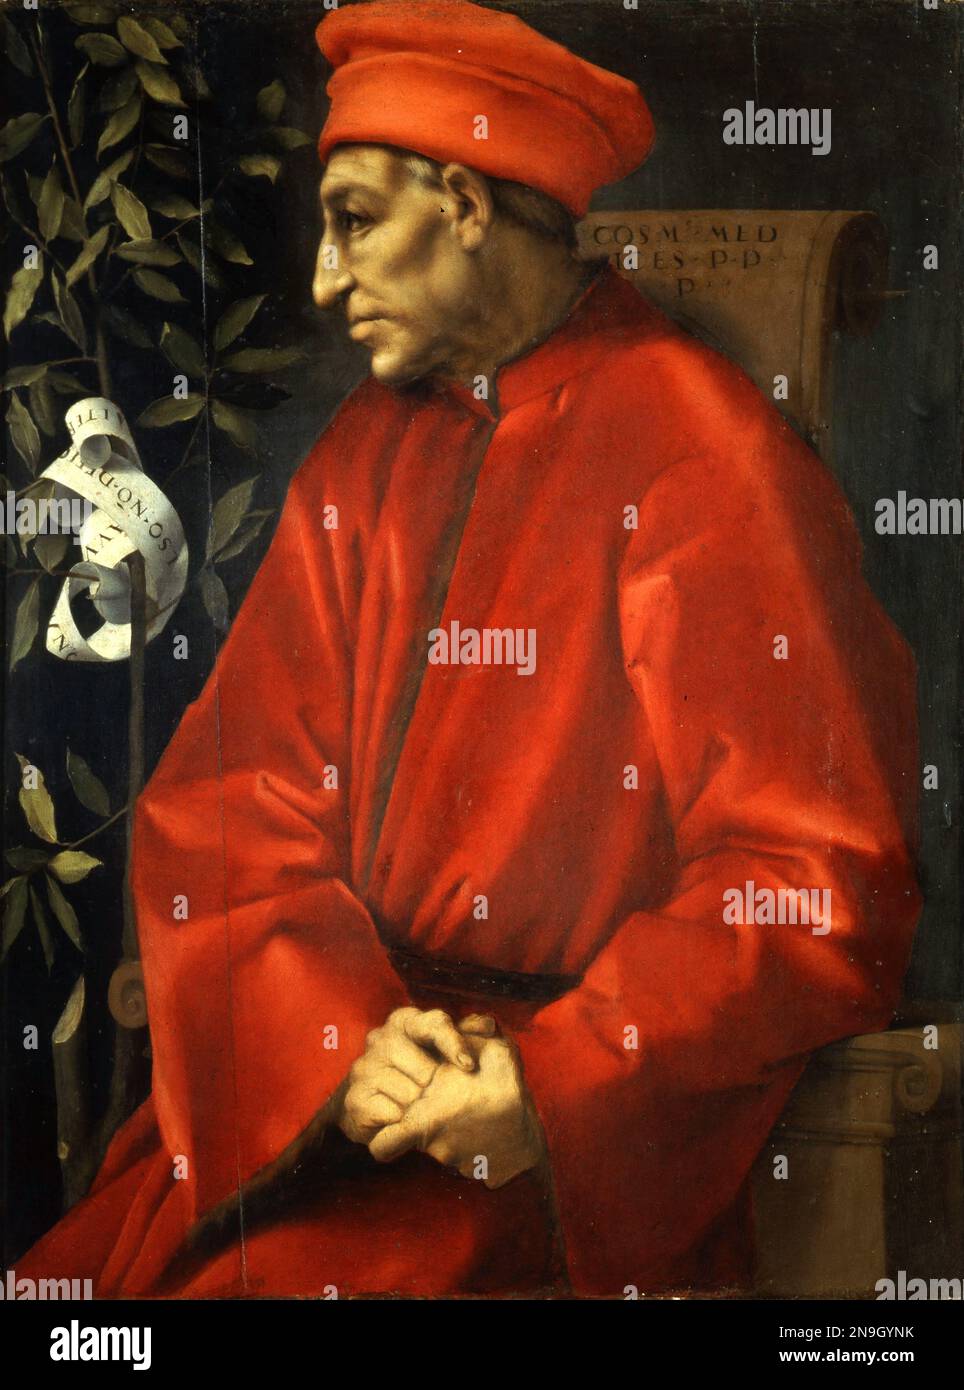 Cosimo di Giovanni de' Medici (1389-1464), italienischer Bankier und Politiker, der die Familie Medici während eines Großteils der italienischen Renaissance als effektive Herrscher von Florenz etablierte. Porträt von Jacopo Pontormo Stockfoto